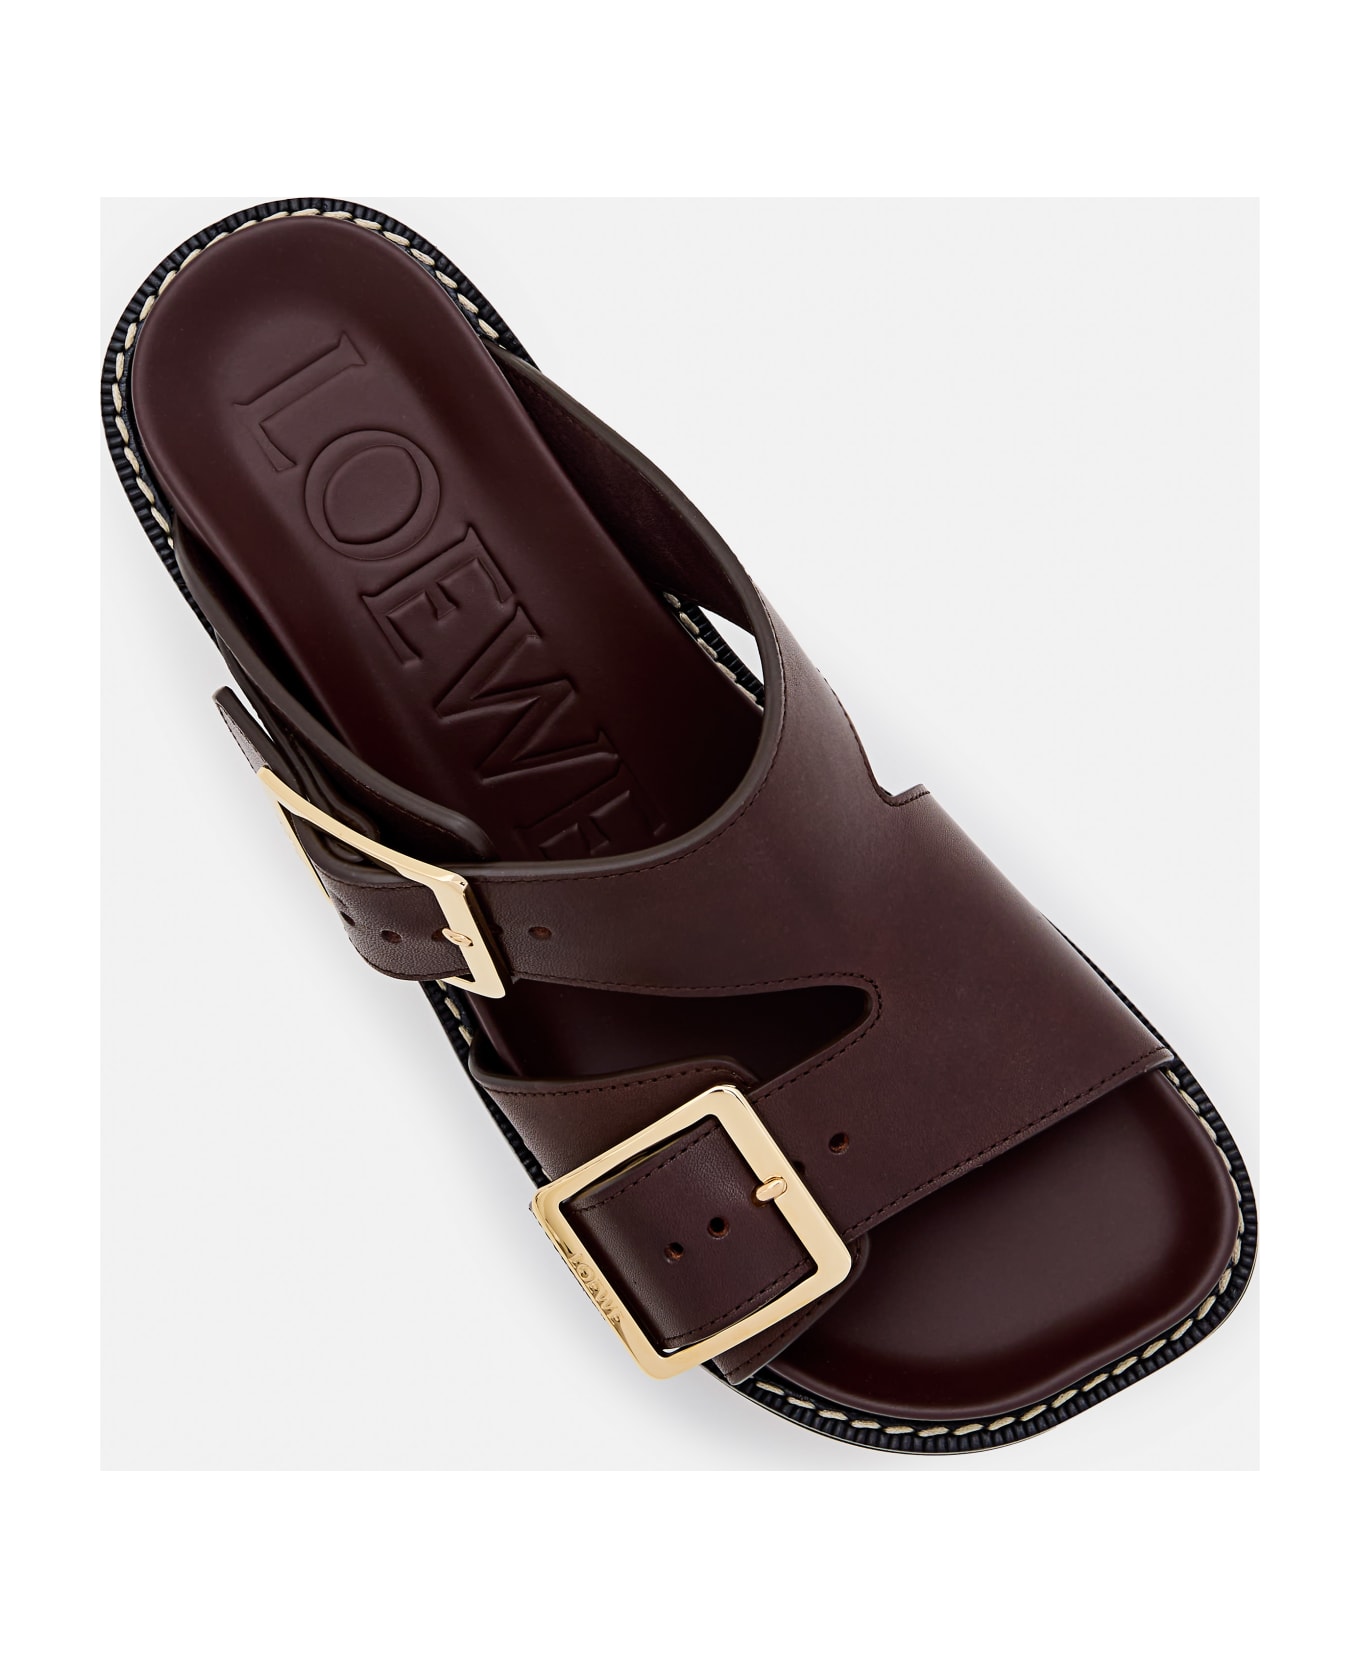 Loewe Buckle Detailed Open Toe Sandals - Brown